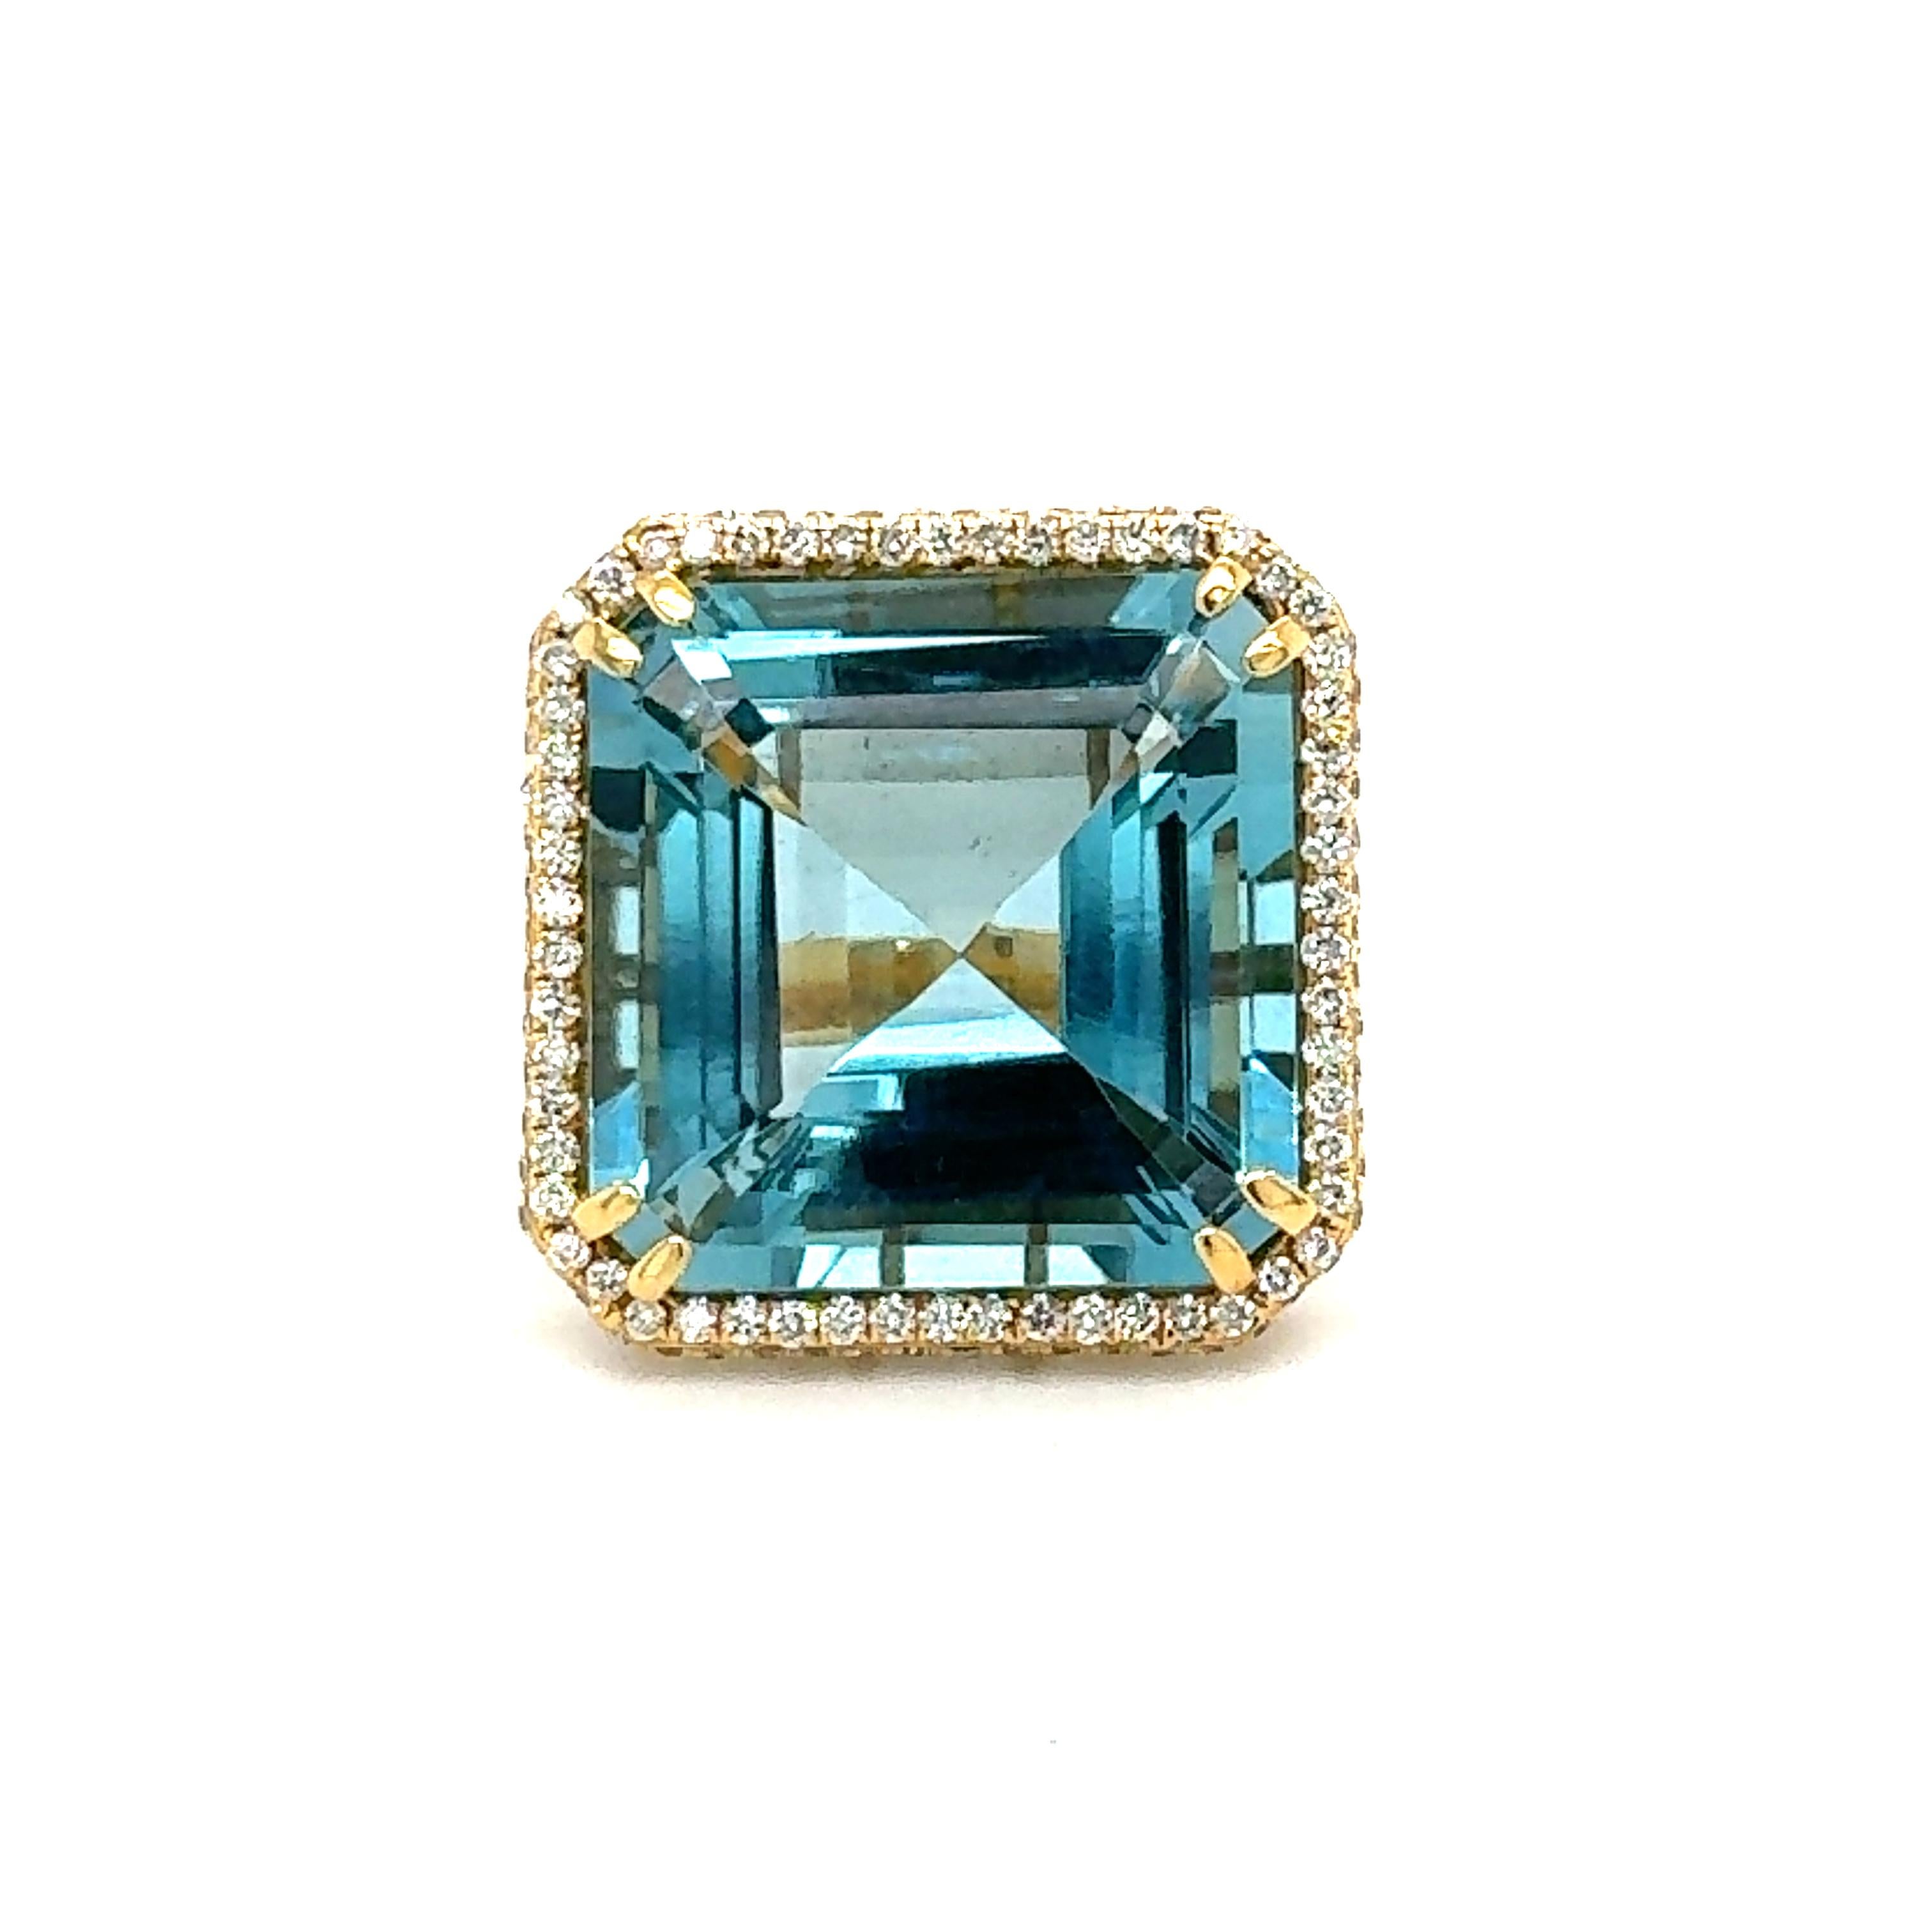 Une topaze bleue naturelle de 36,14 carats entourée de diamants de 1,99 carat en or jaune 18 carats.  